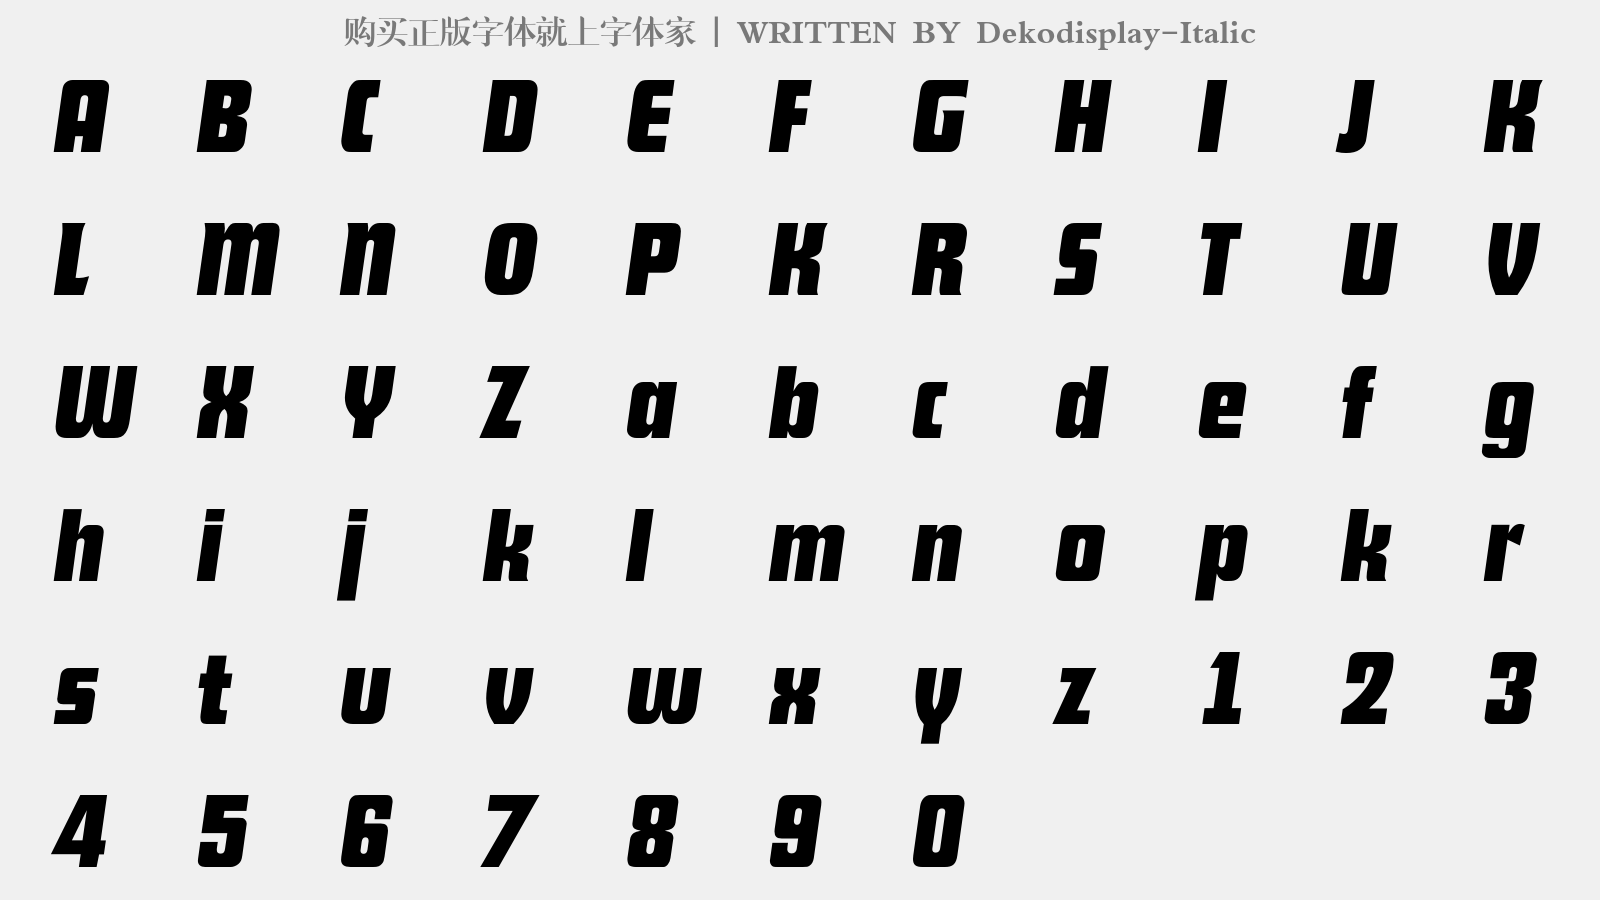 Dekodisplay-Italic - 大写字母/小写字母/数字